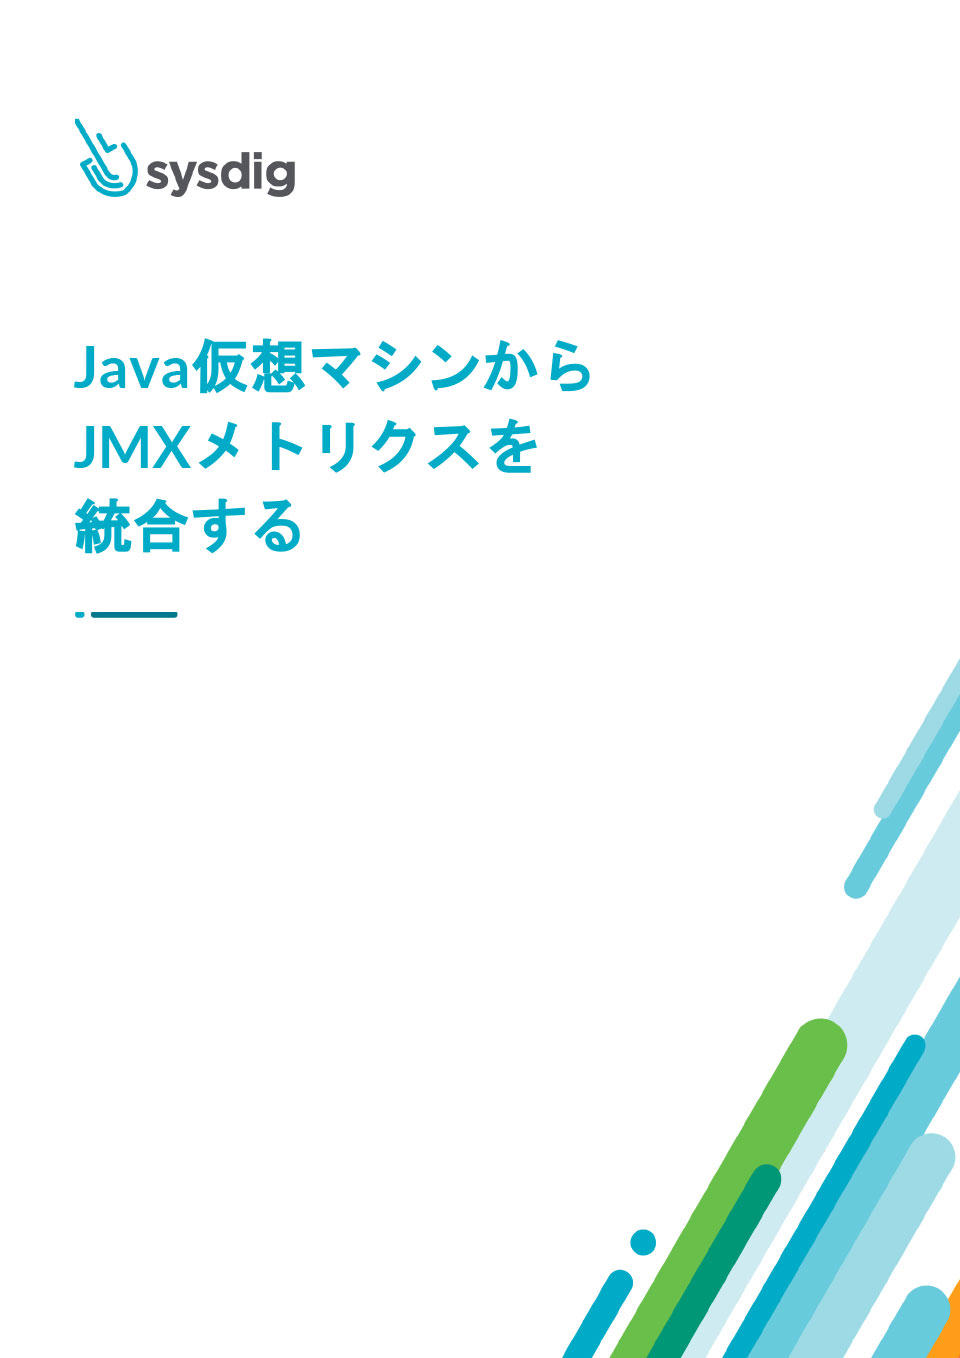 「Java仮想マシンからJMXメトリクスを統合する」を公開しました